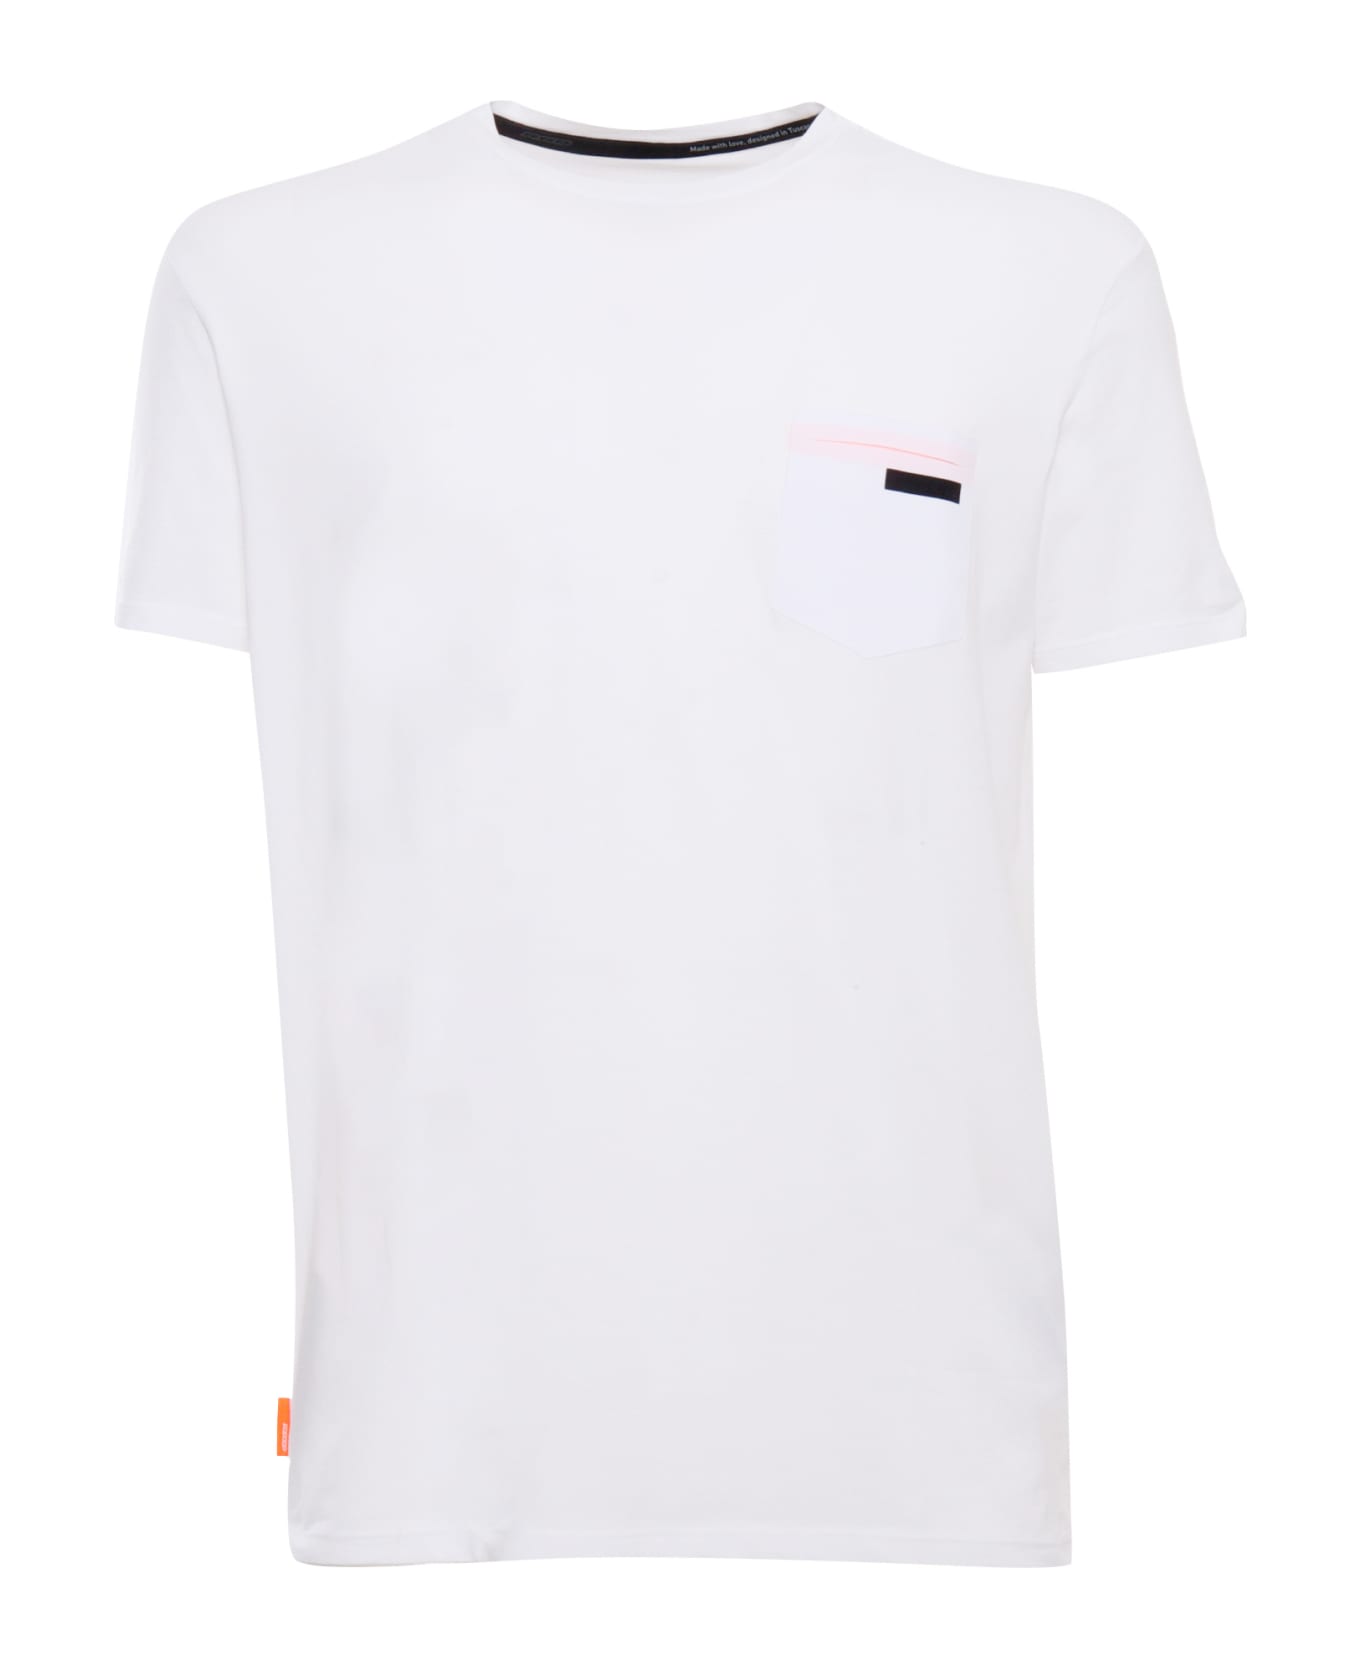 RRD - Roberto Ricci Design Revo White T-shirt - WHITE